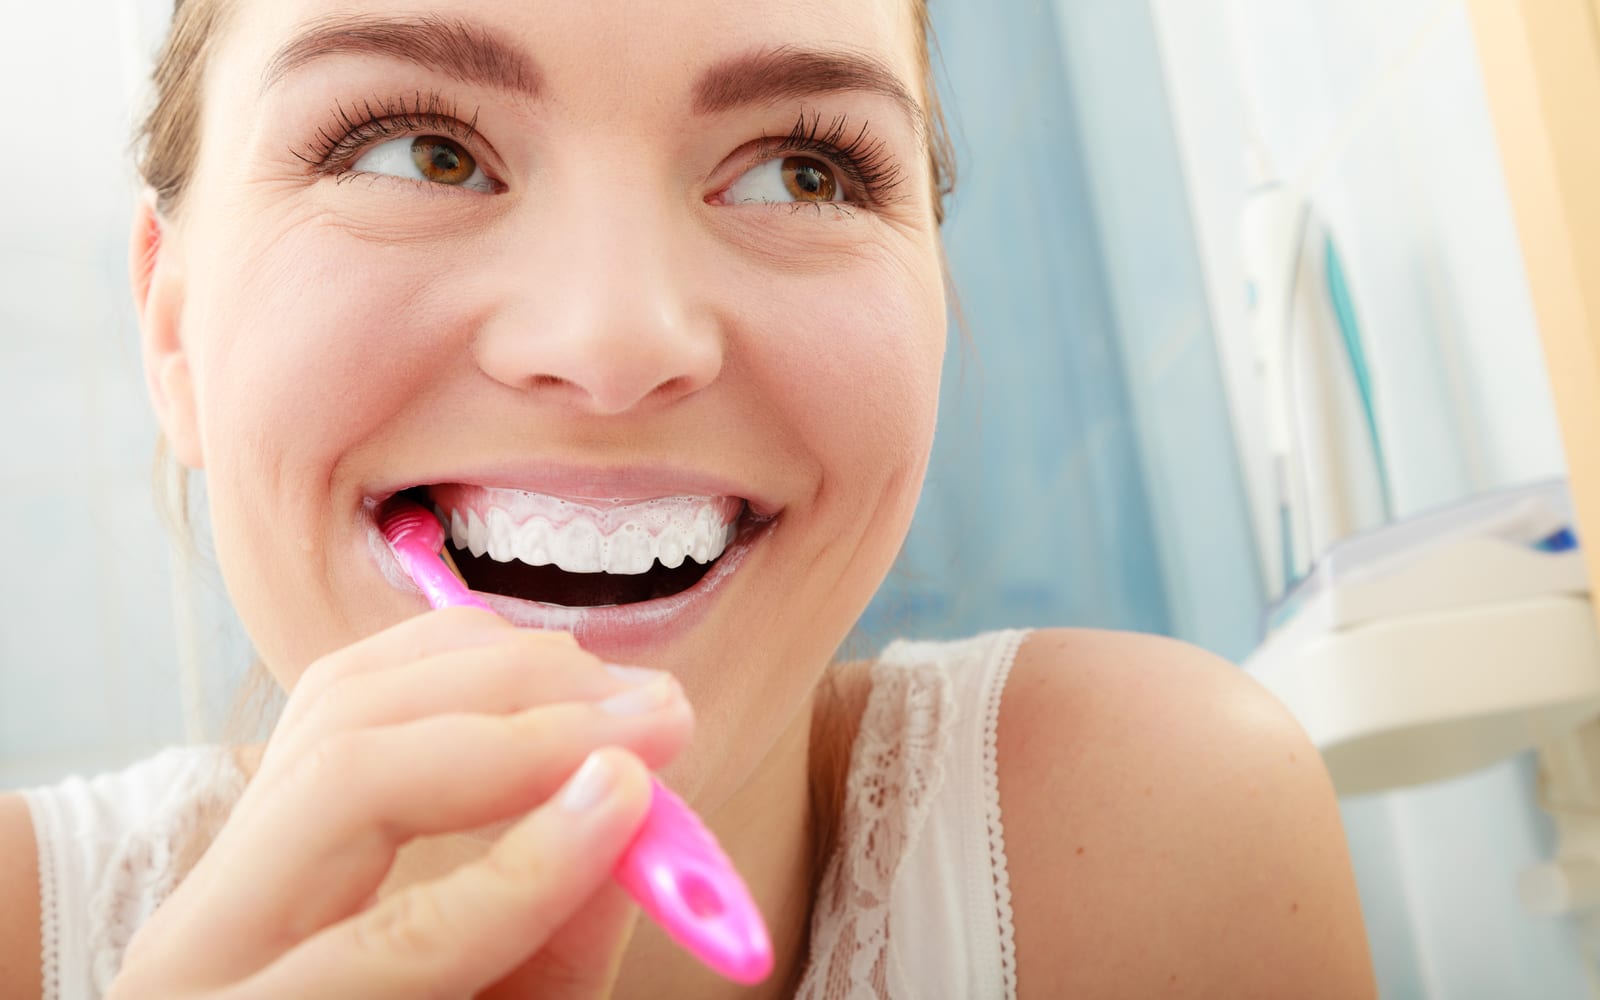 Woman smiling while brushing